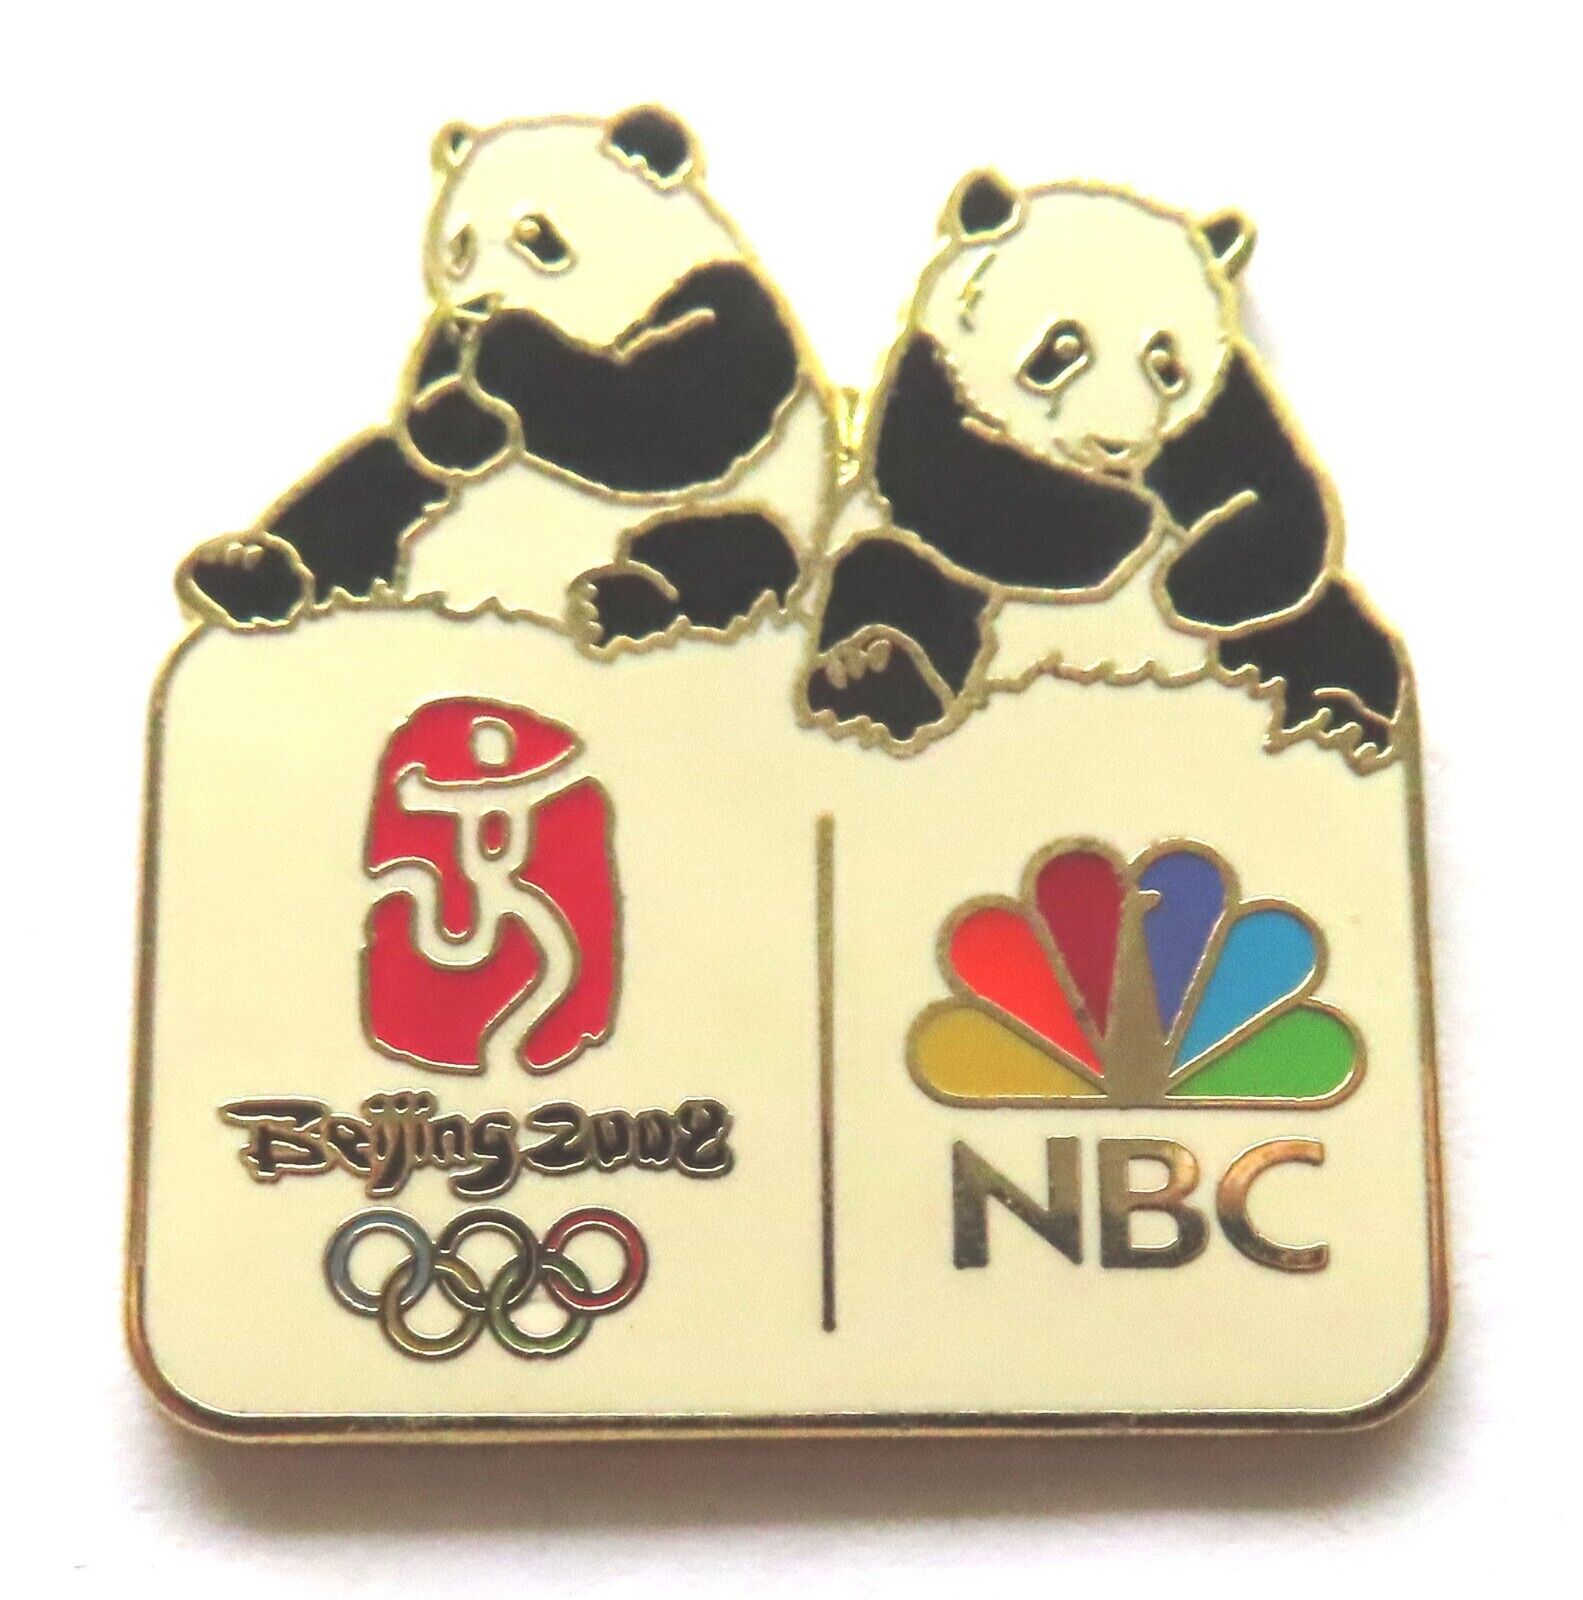 2008 Beijing Olympics pin: 2 Pandas above NBC logo and official emblem